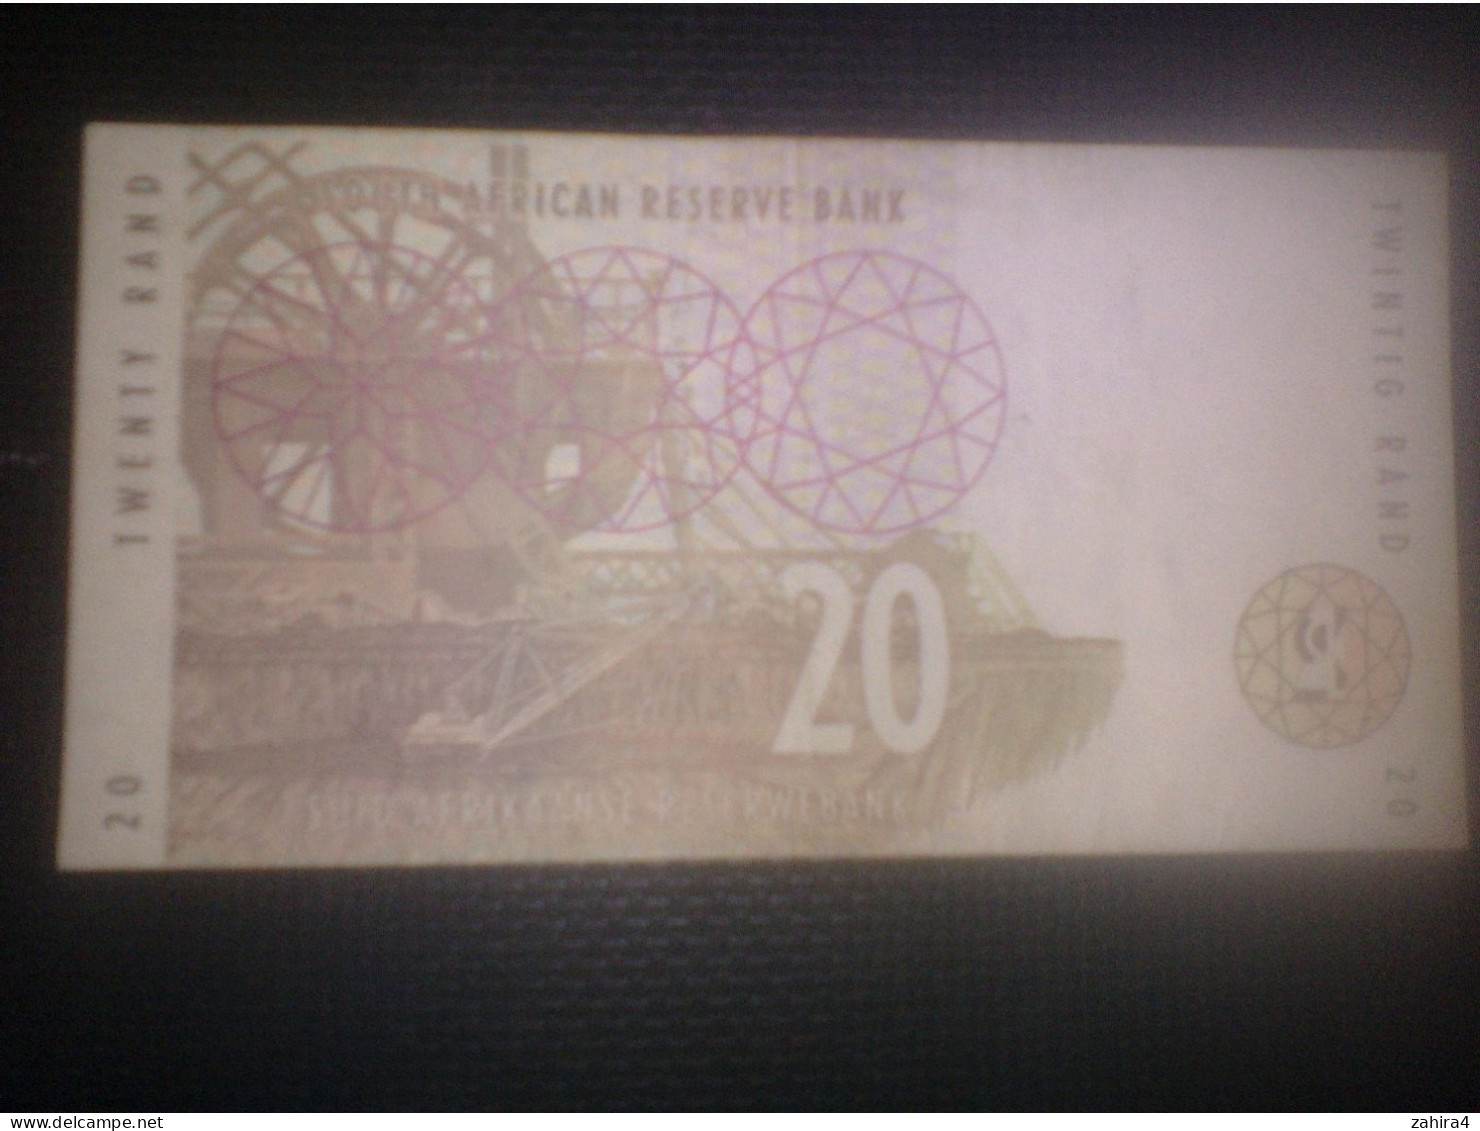 South Africa Reserve Bank - 20 - Twenty Rand - DE5158364 B - Eléphants - Afrique Du Sud